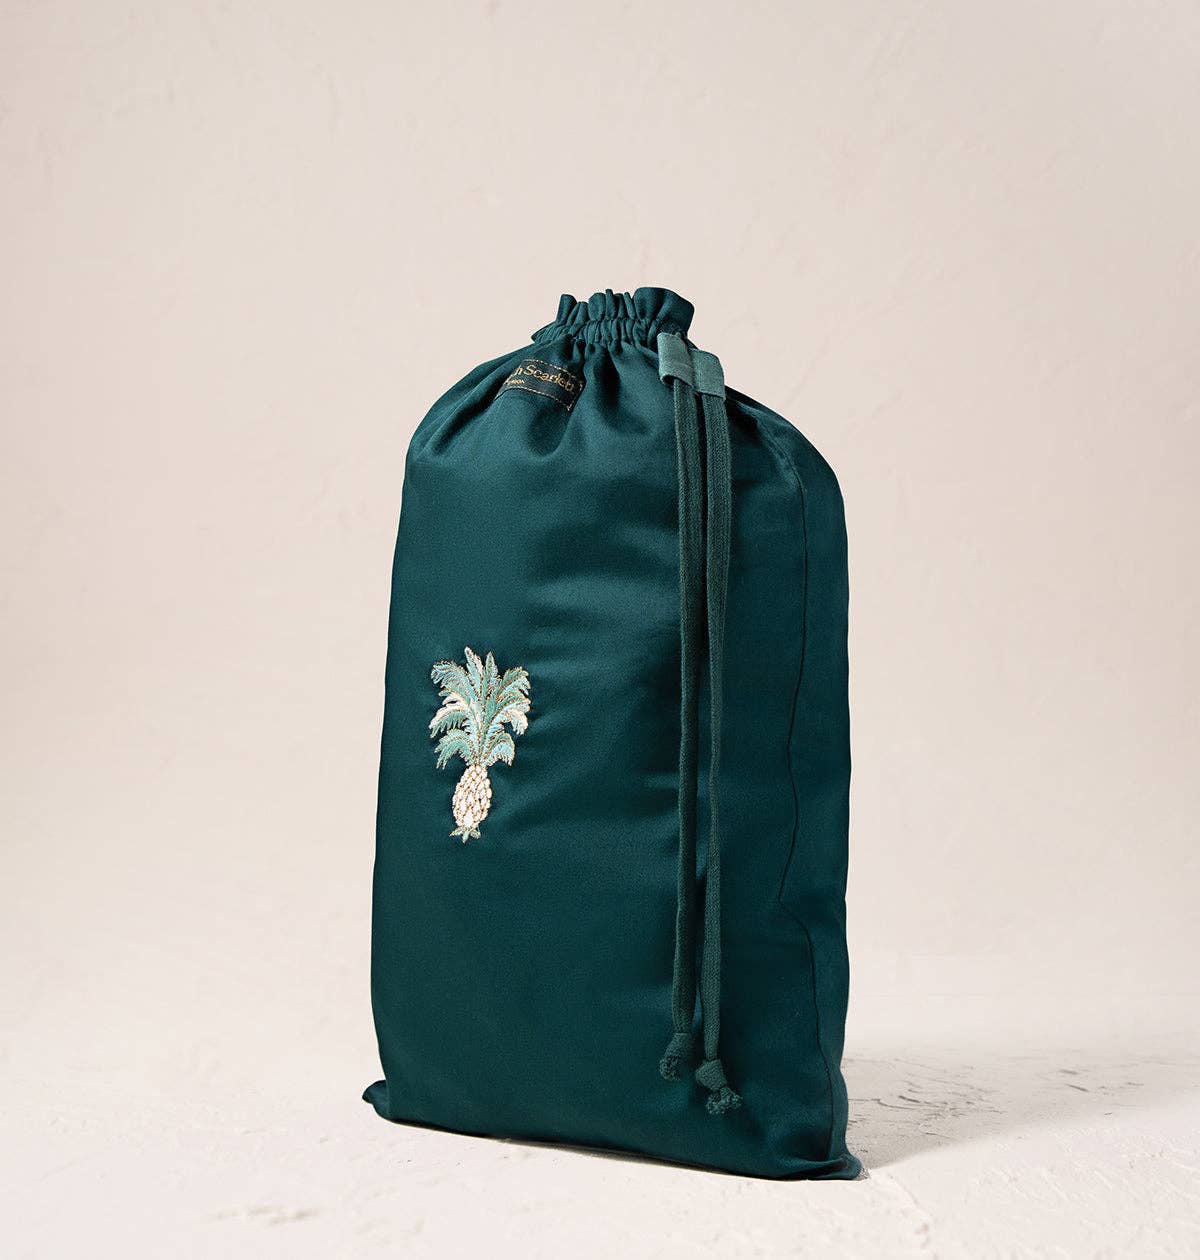 Elizabeth Scarlett Ltd Pineapples Laundry Bag